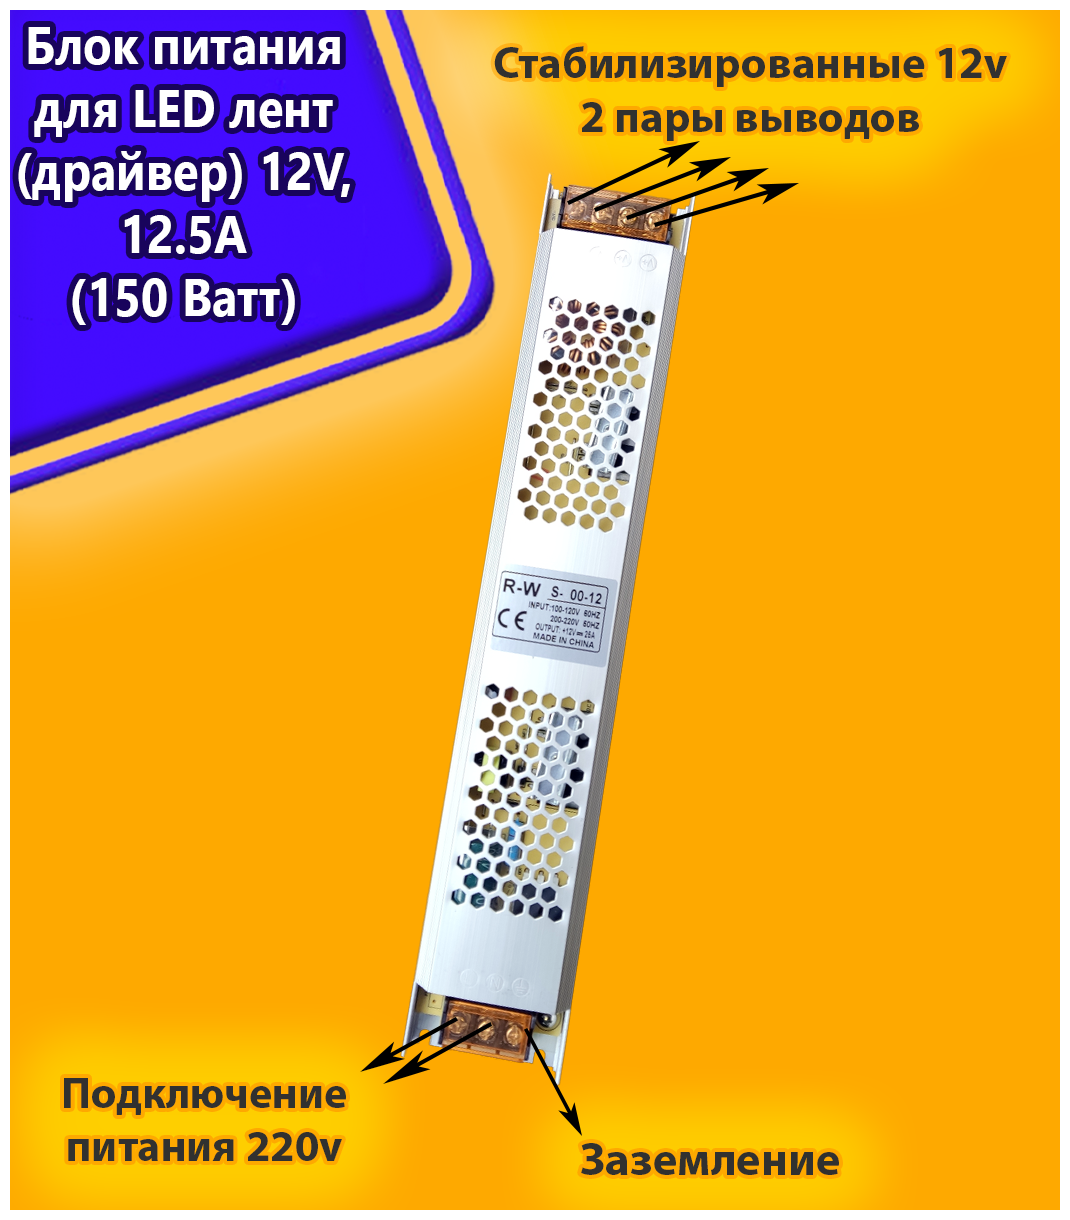 Блок питания для светильника, Блок питания LED для светодиодной ленты URAlight, 12В, 16.5А, 200 Вт, IP20